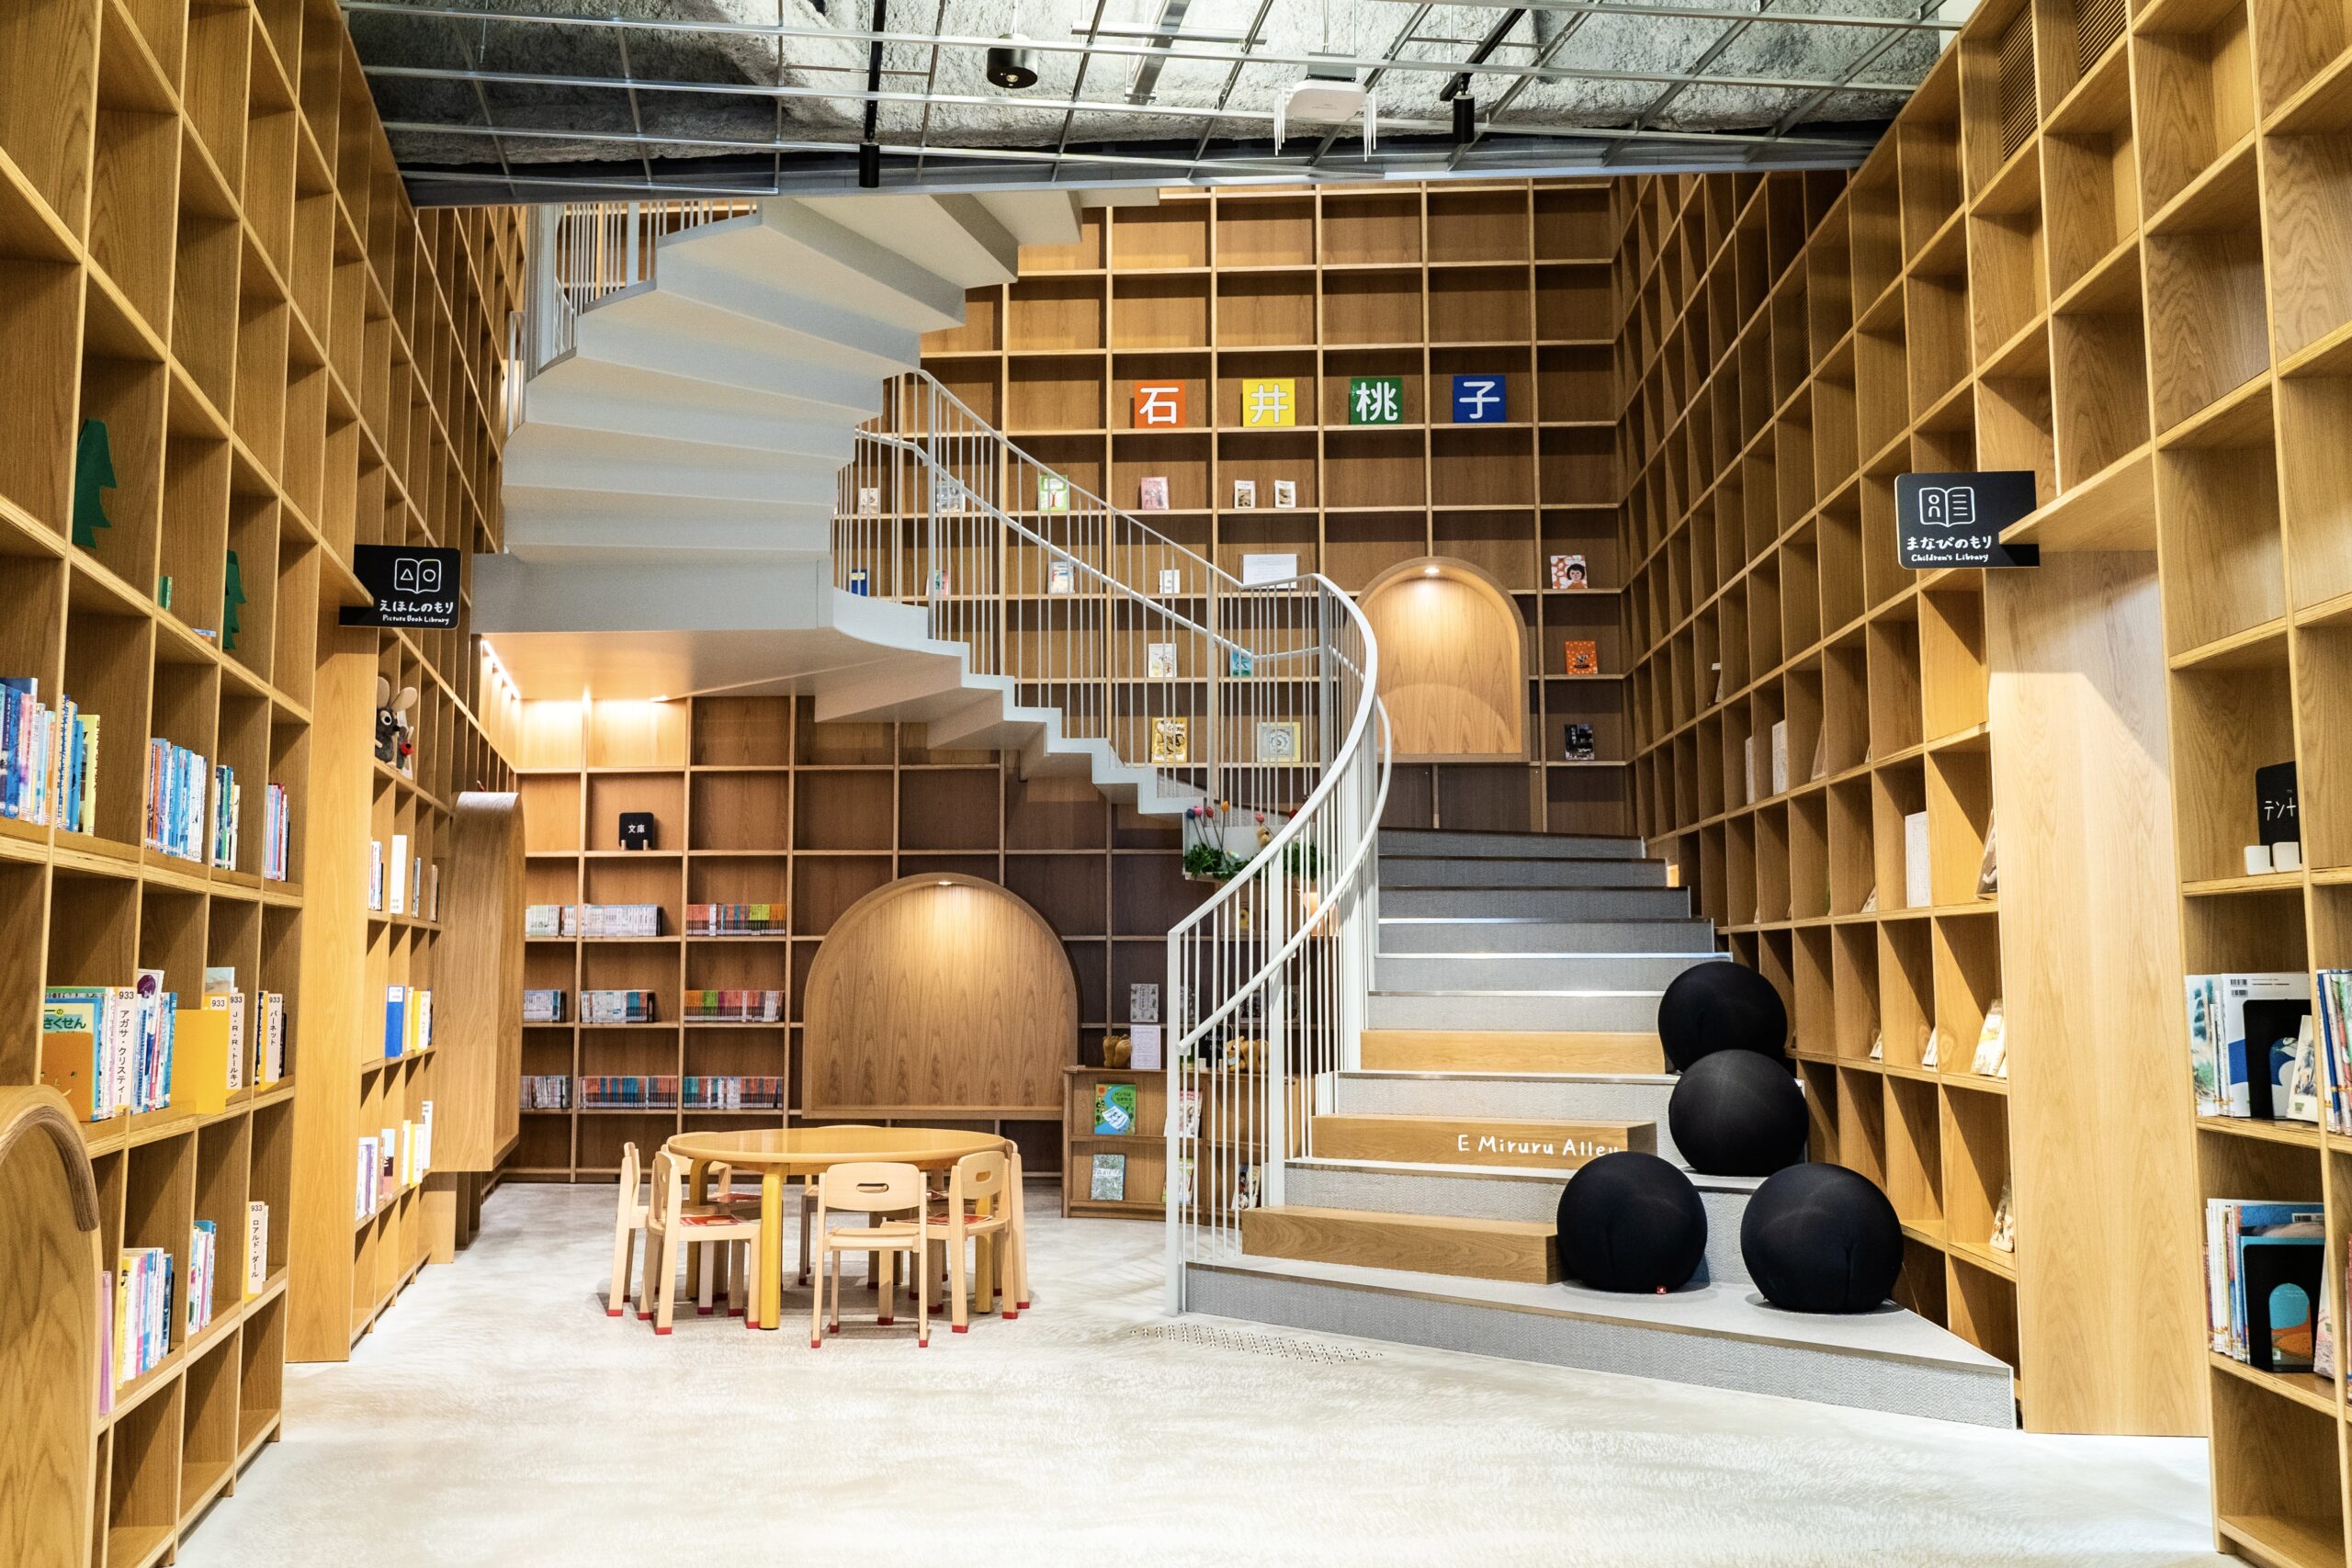 【栃木県】黒磯駅前にある「那須塩原市図書館みるる」は空間も楽しむことができるおしゃれな図書館